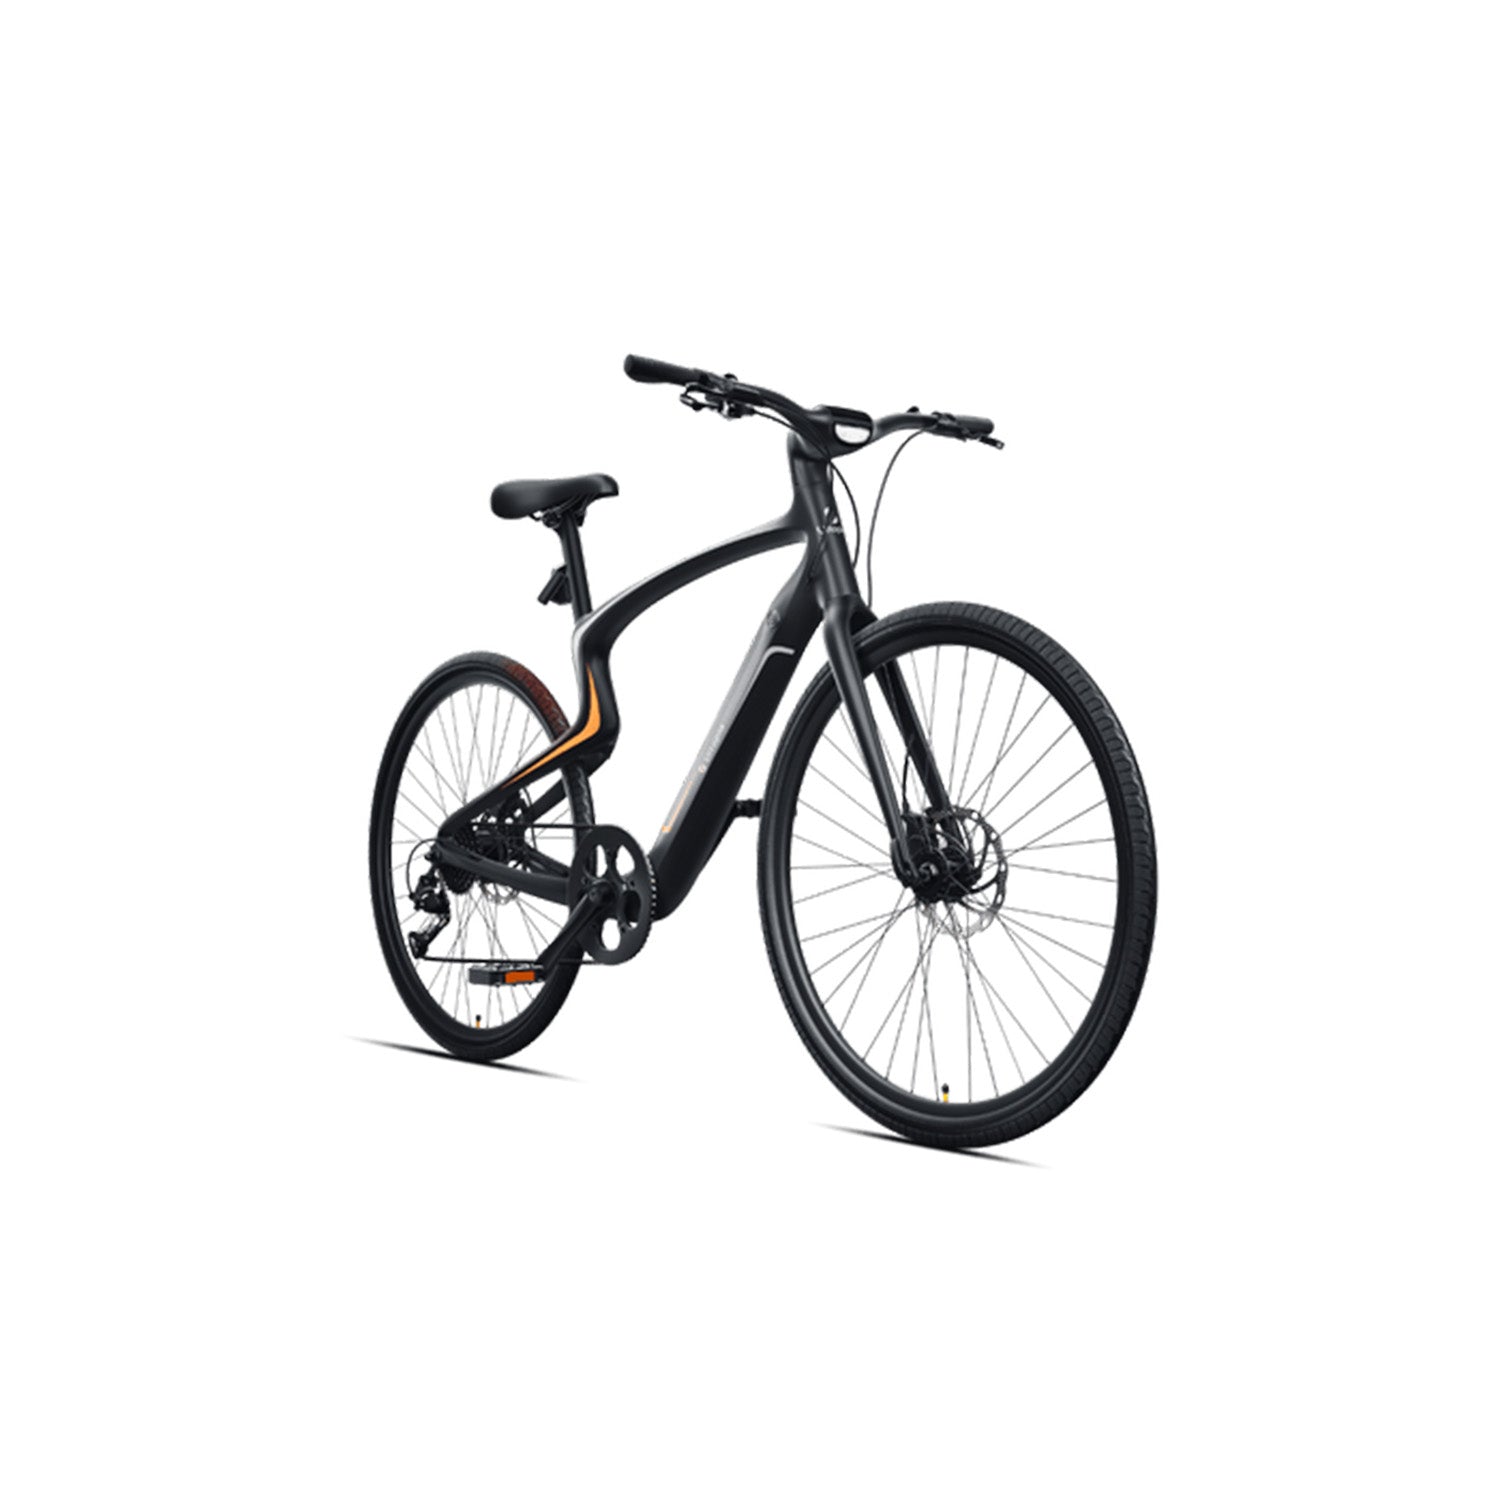 Urtopia Carbon 1/1s E-Bike bis 15kg ultraleicht - Elektrische Fahrräder Urtopia